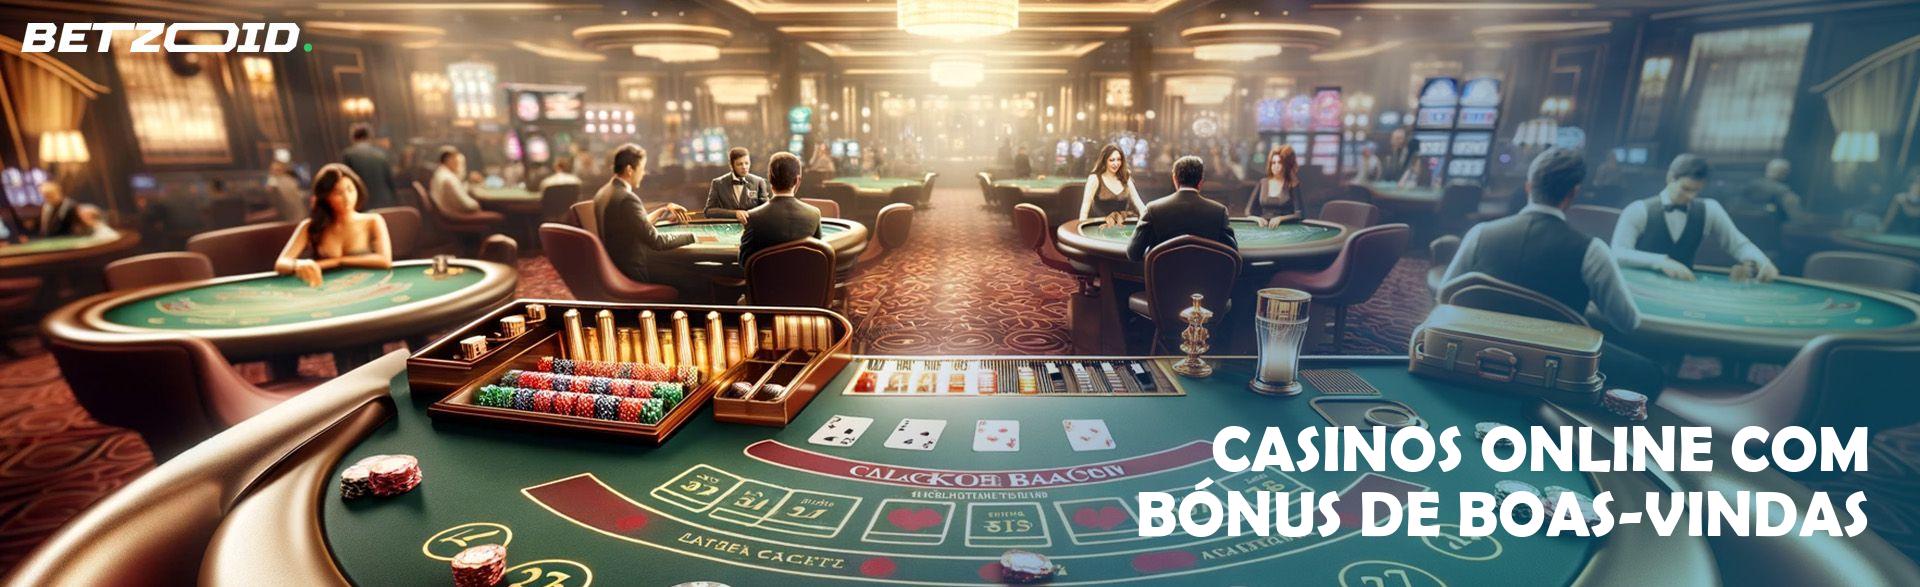 Casinos Online com Bónus de Boas-Vindas.